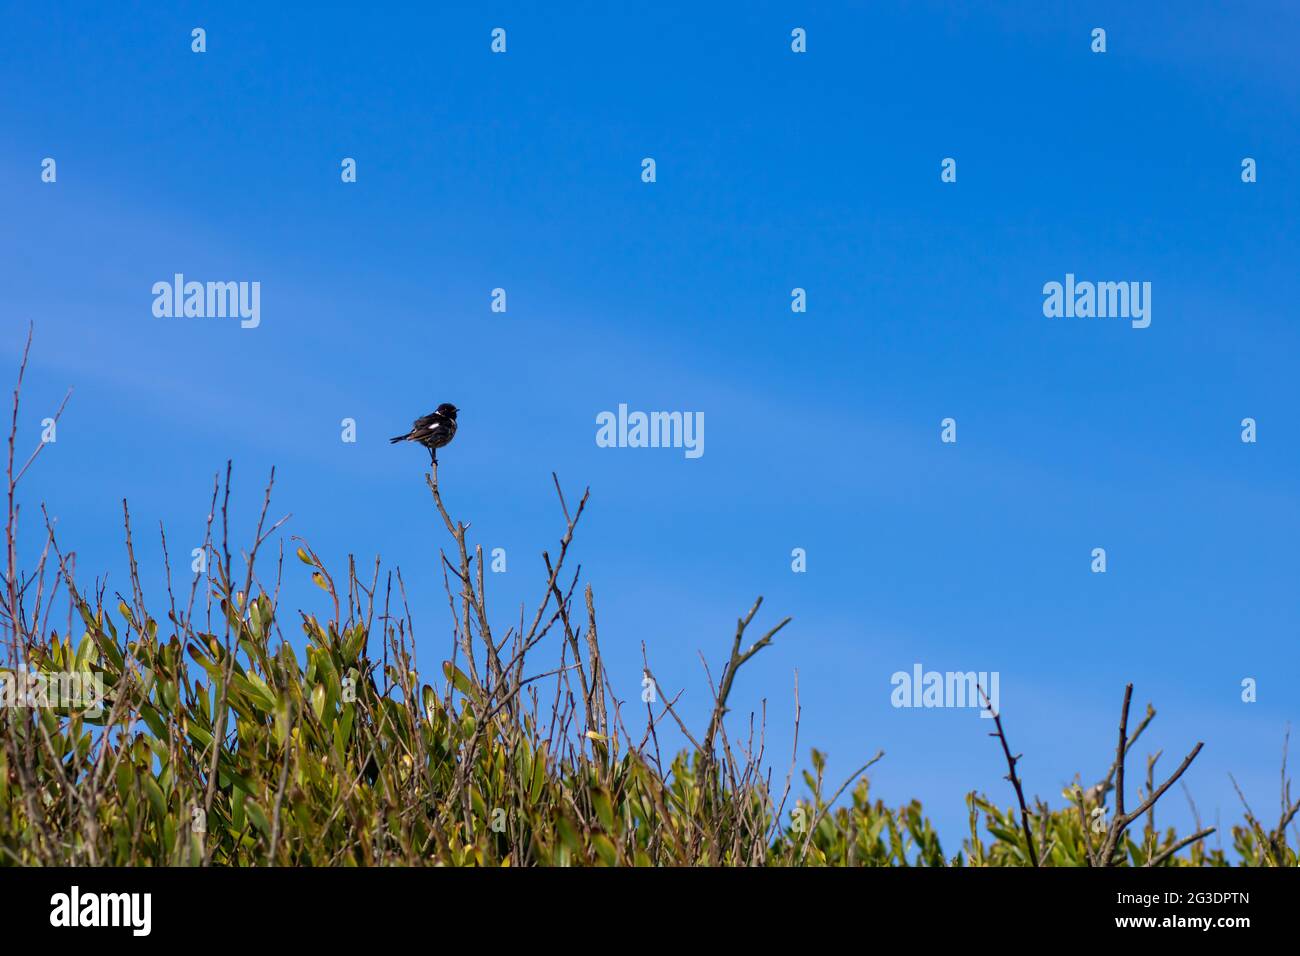 Piccolo stonechat africano in piedi su un ramo cespuglio contro il cielo blu vibrante. Fotografia paesaggistica di uccelli nella zona costiera con spazio di copia Foto Stock